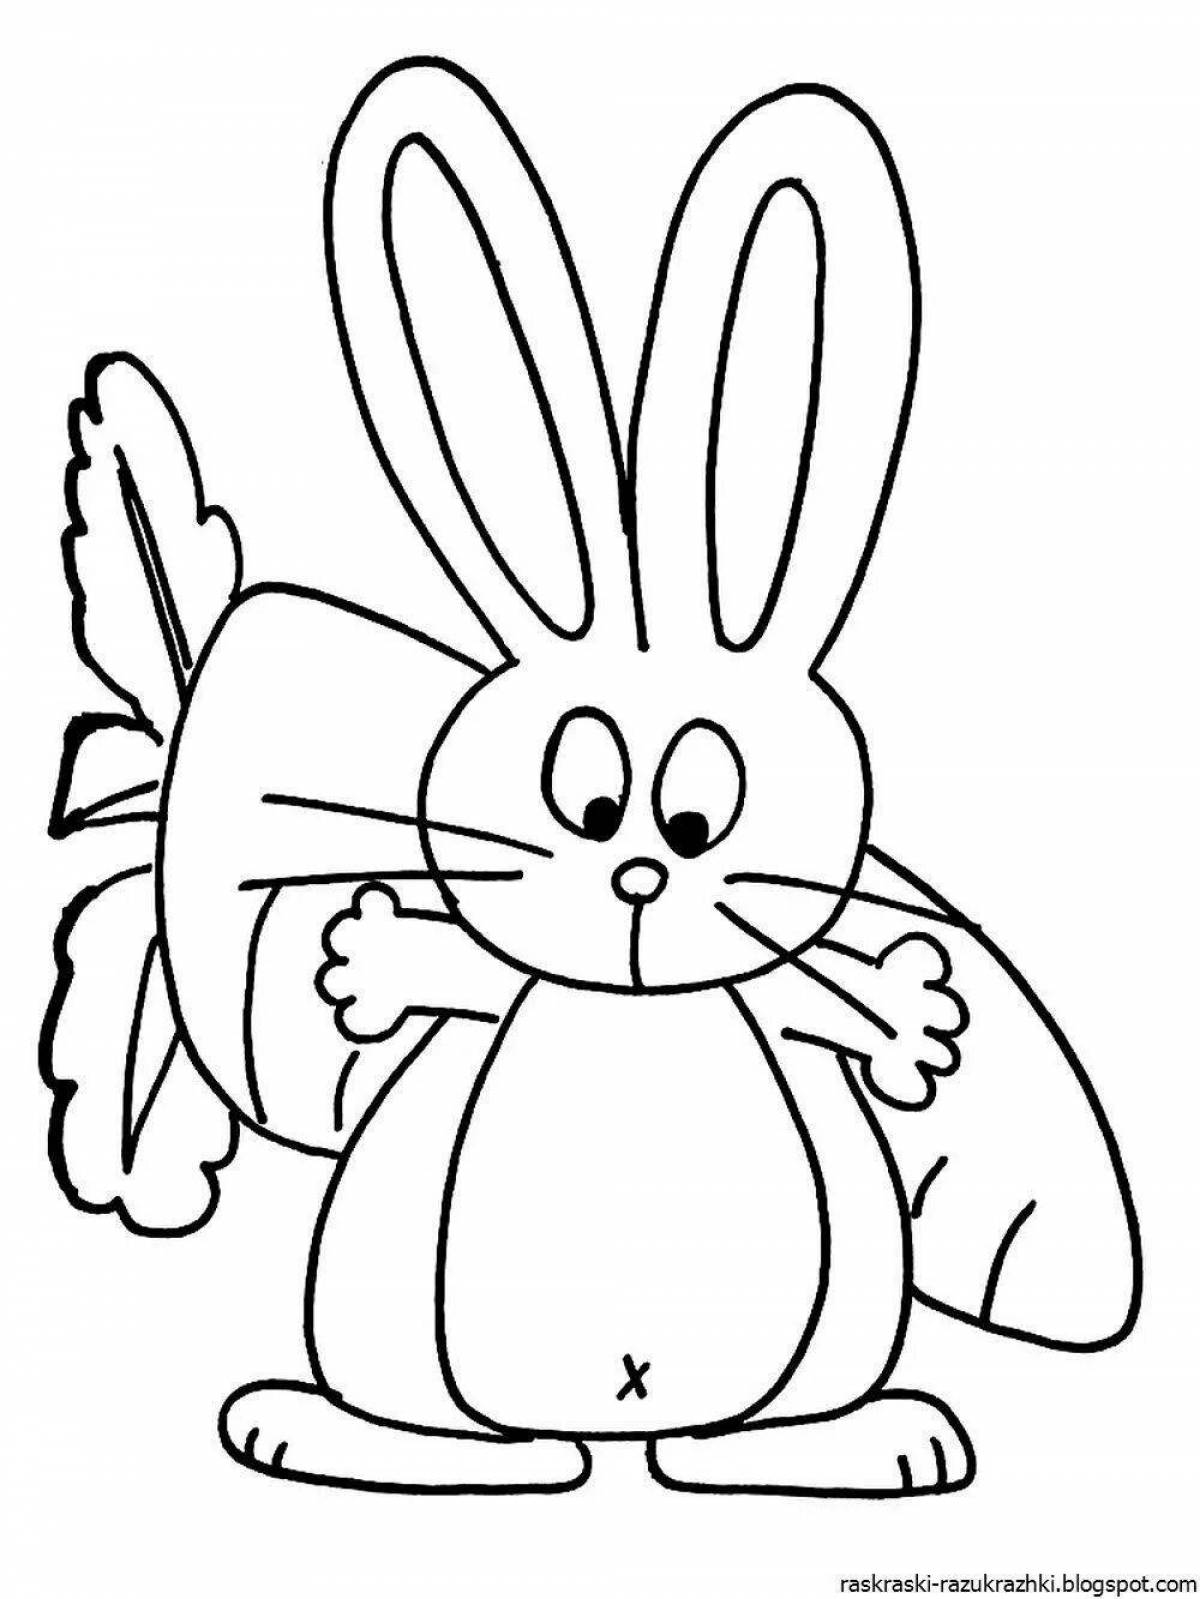 Выразительный рисунок кролика для детей